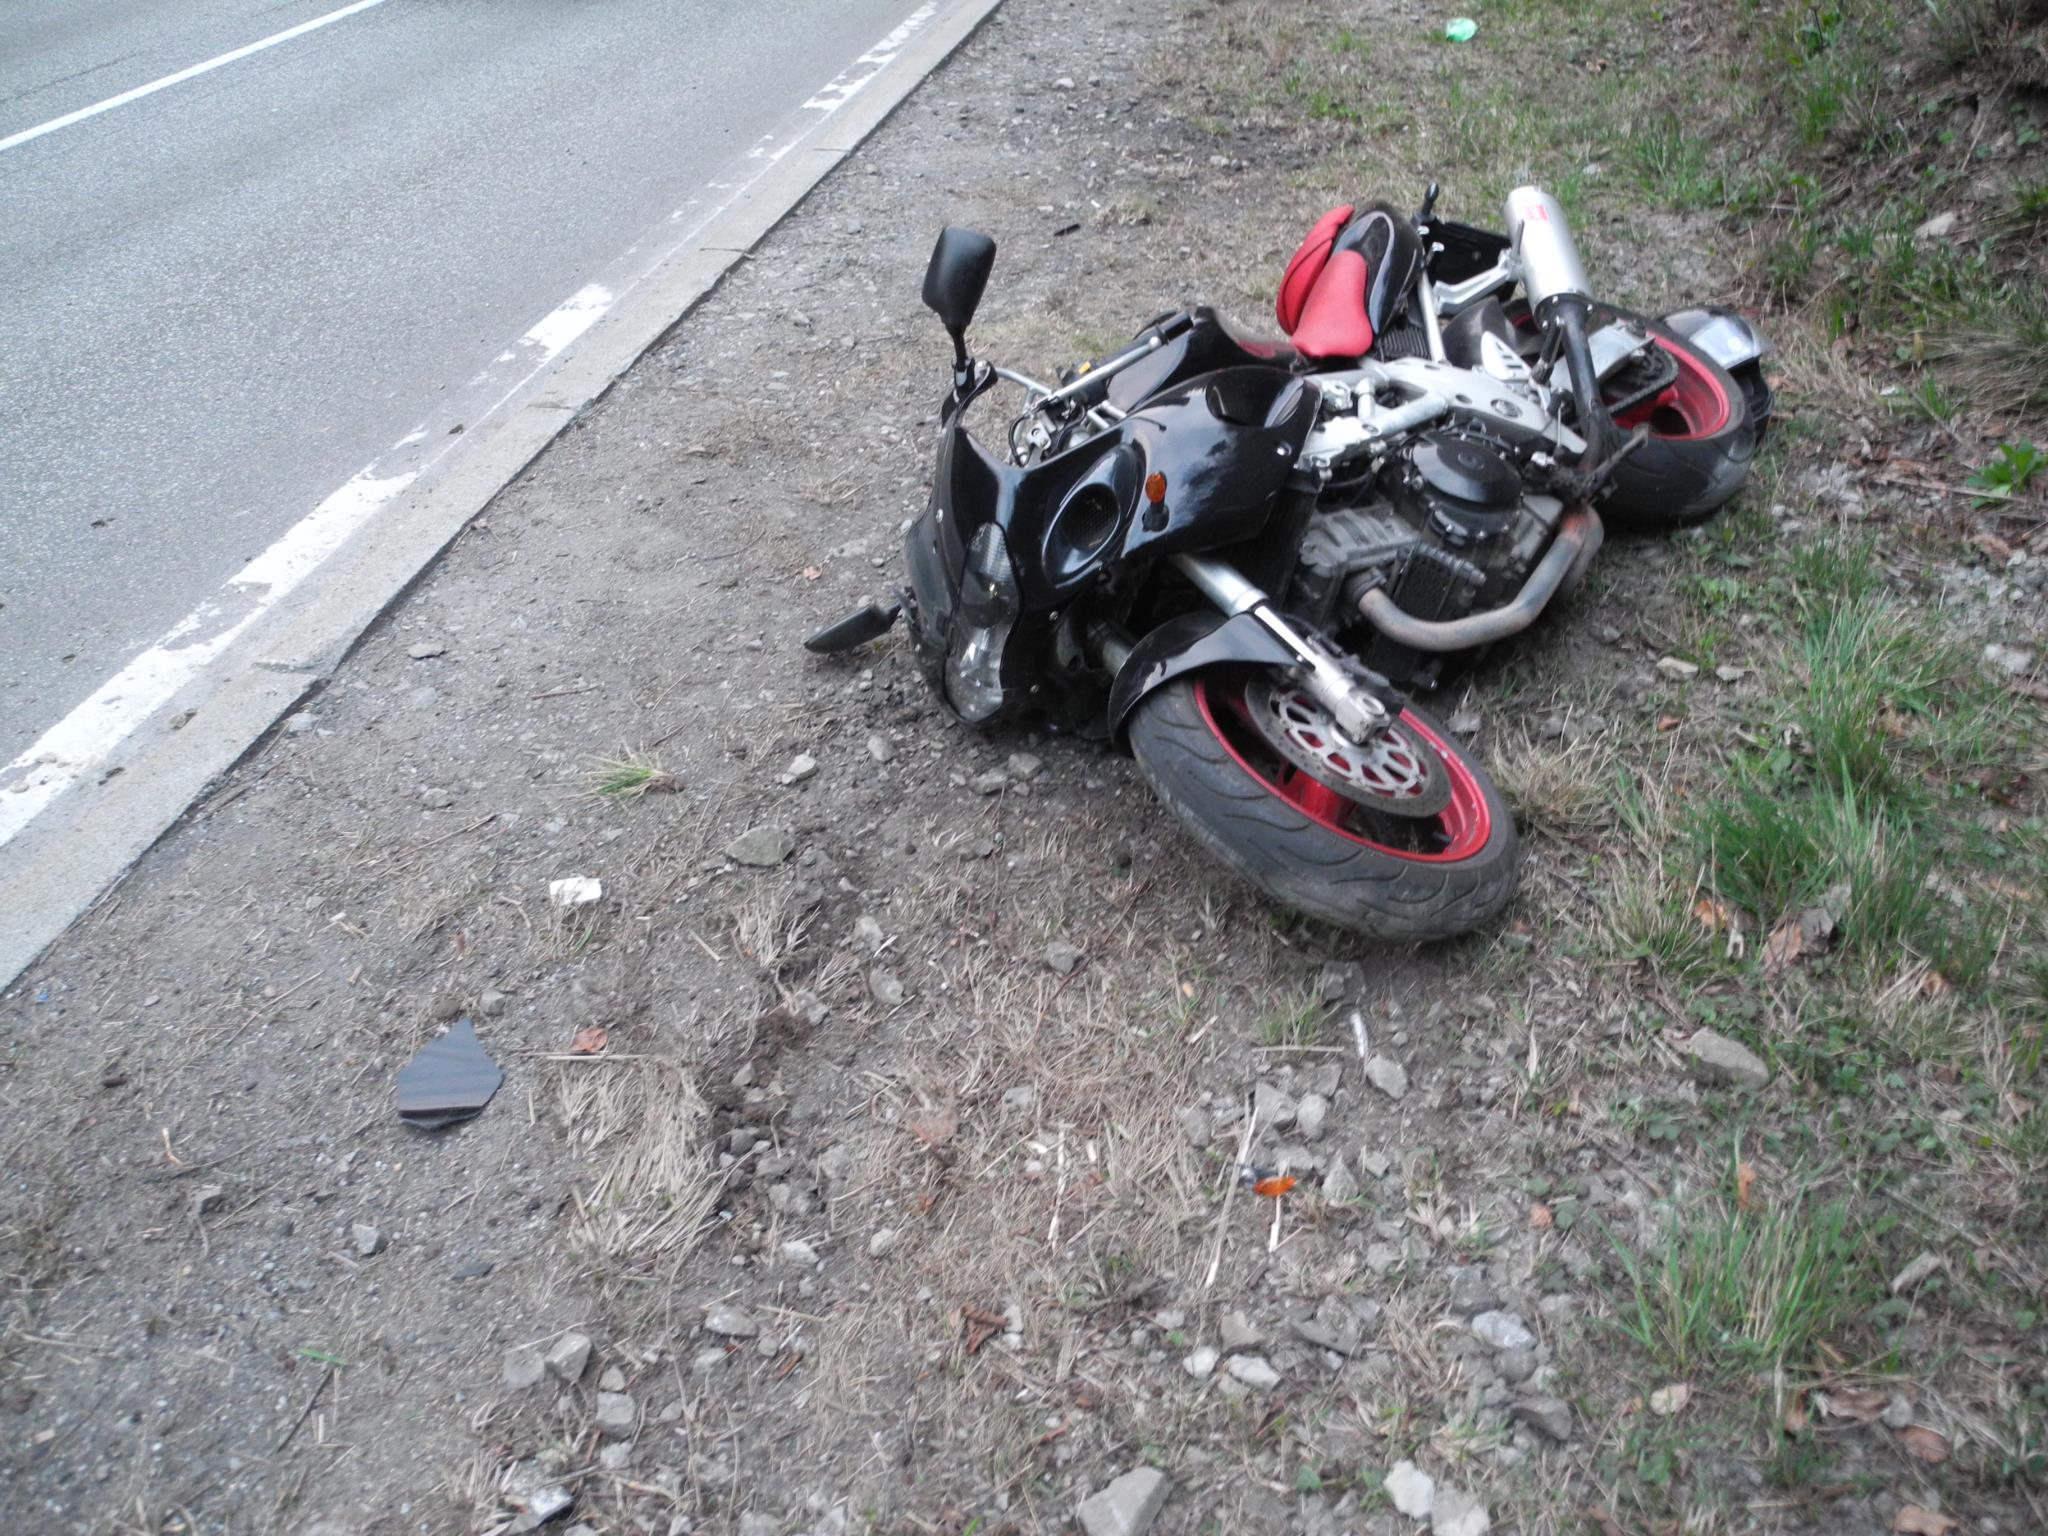 Mit diesem Motorrad stürzte der Mann.